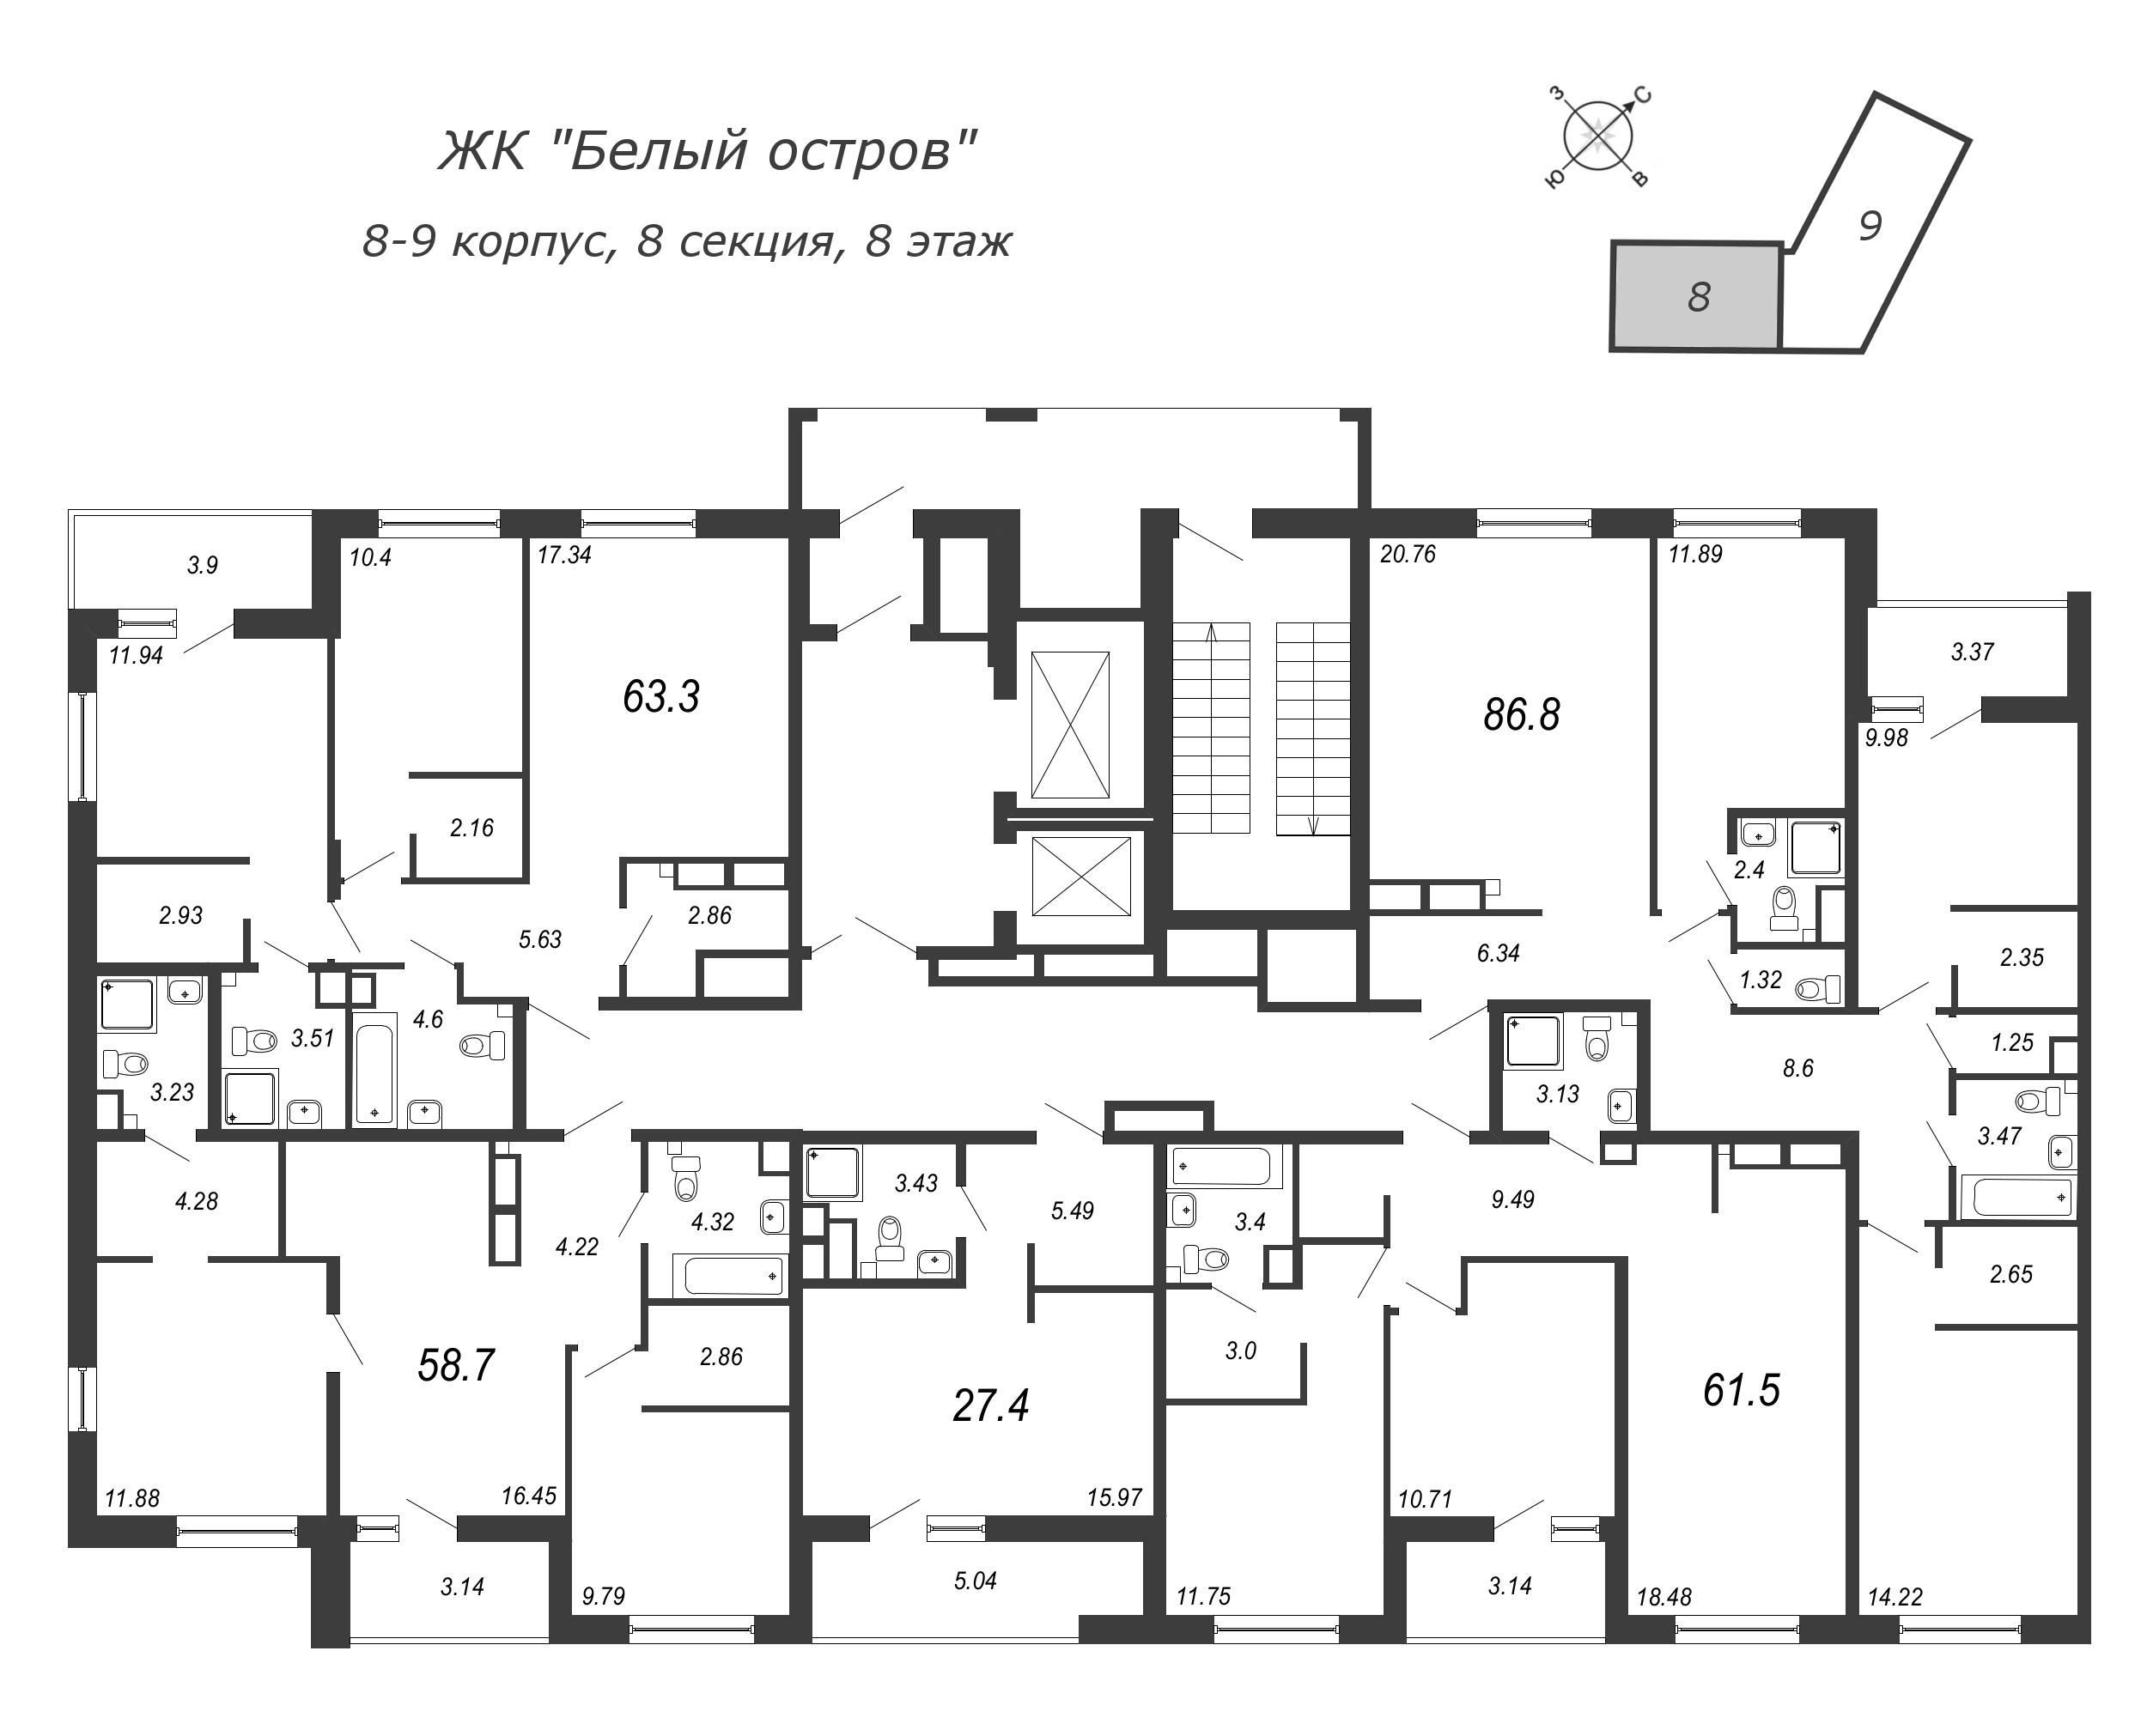 4-комнатная (Евро) квартира, 88.6 м² в ЖК "Белый остров" - планировка этажа